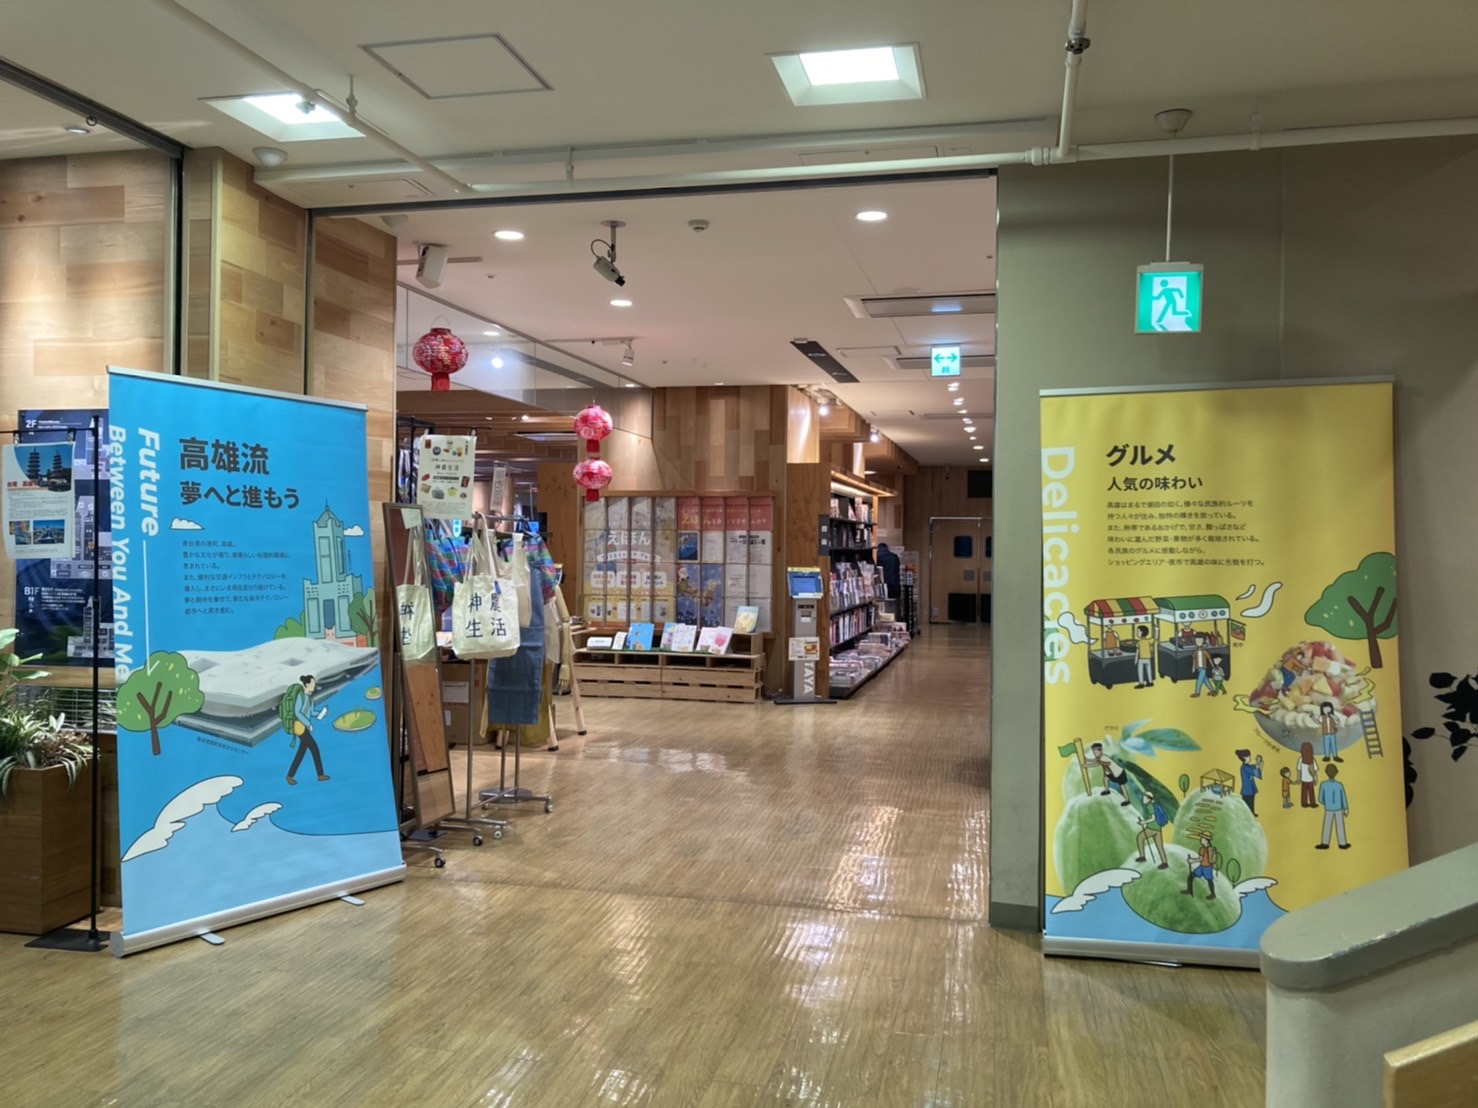 熊本市政府於該市蔦屋書店展示介紹高雄文化、美食的輕展架。